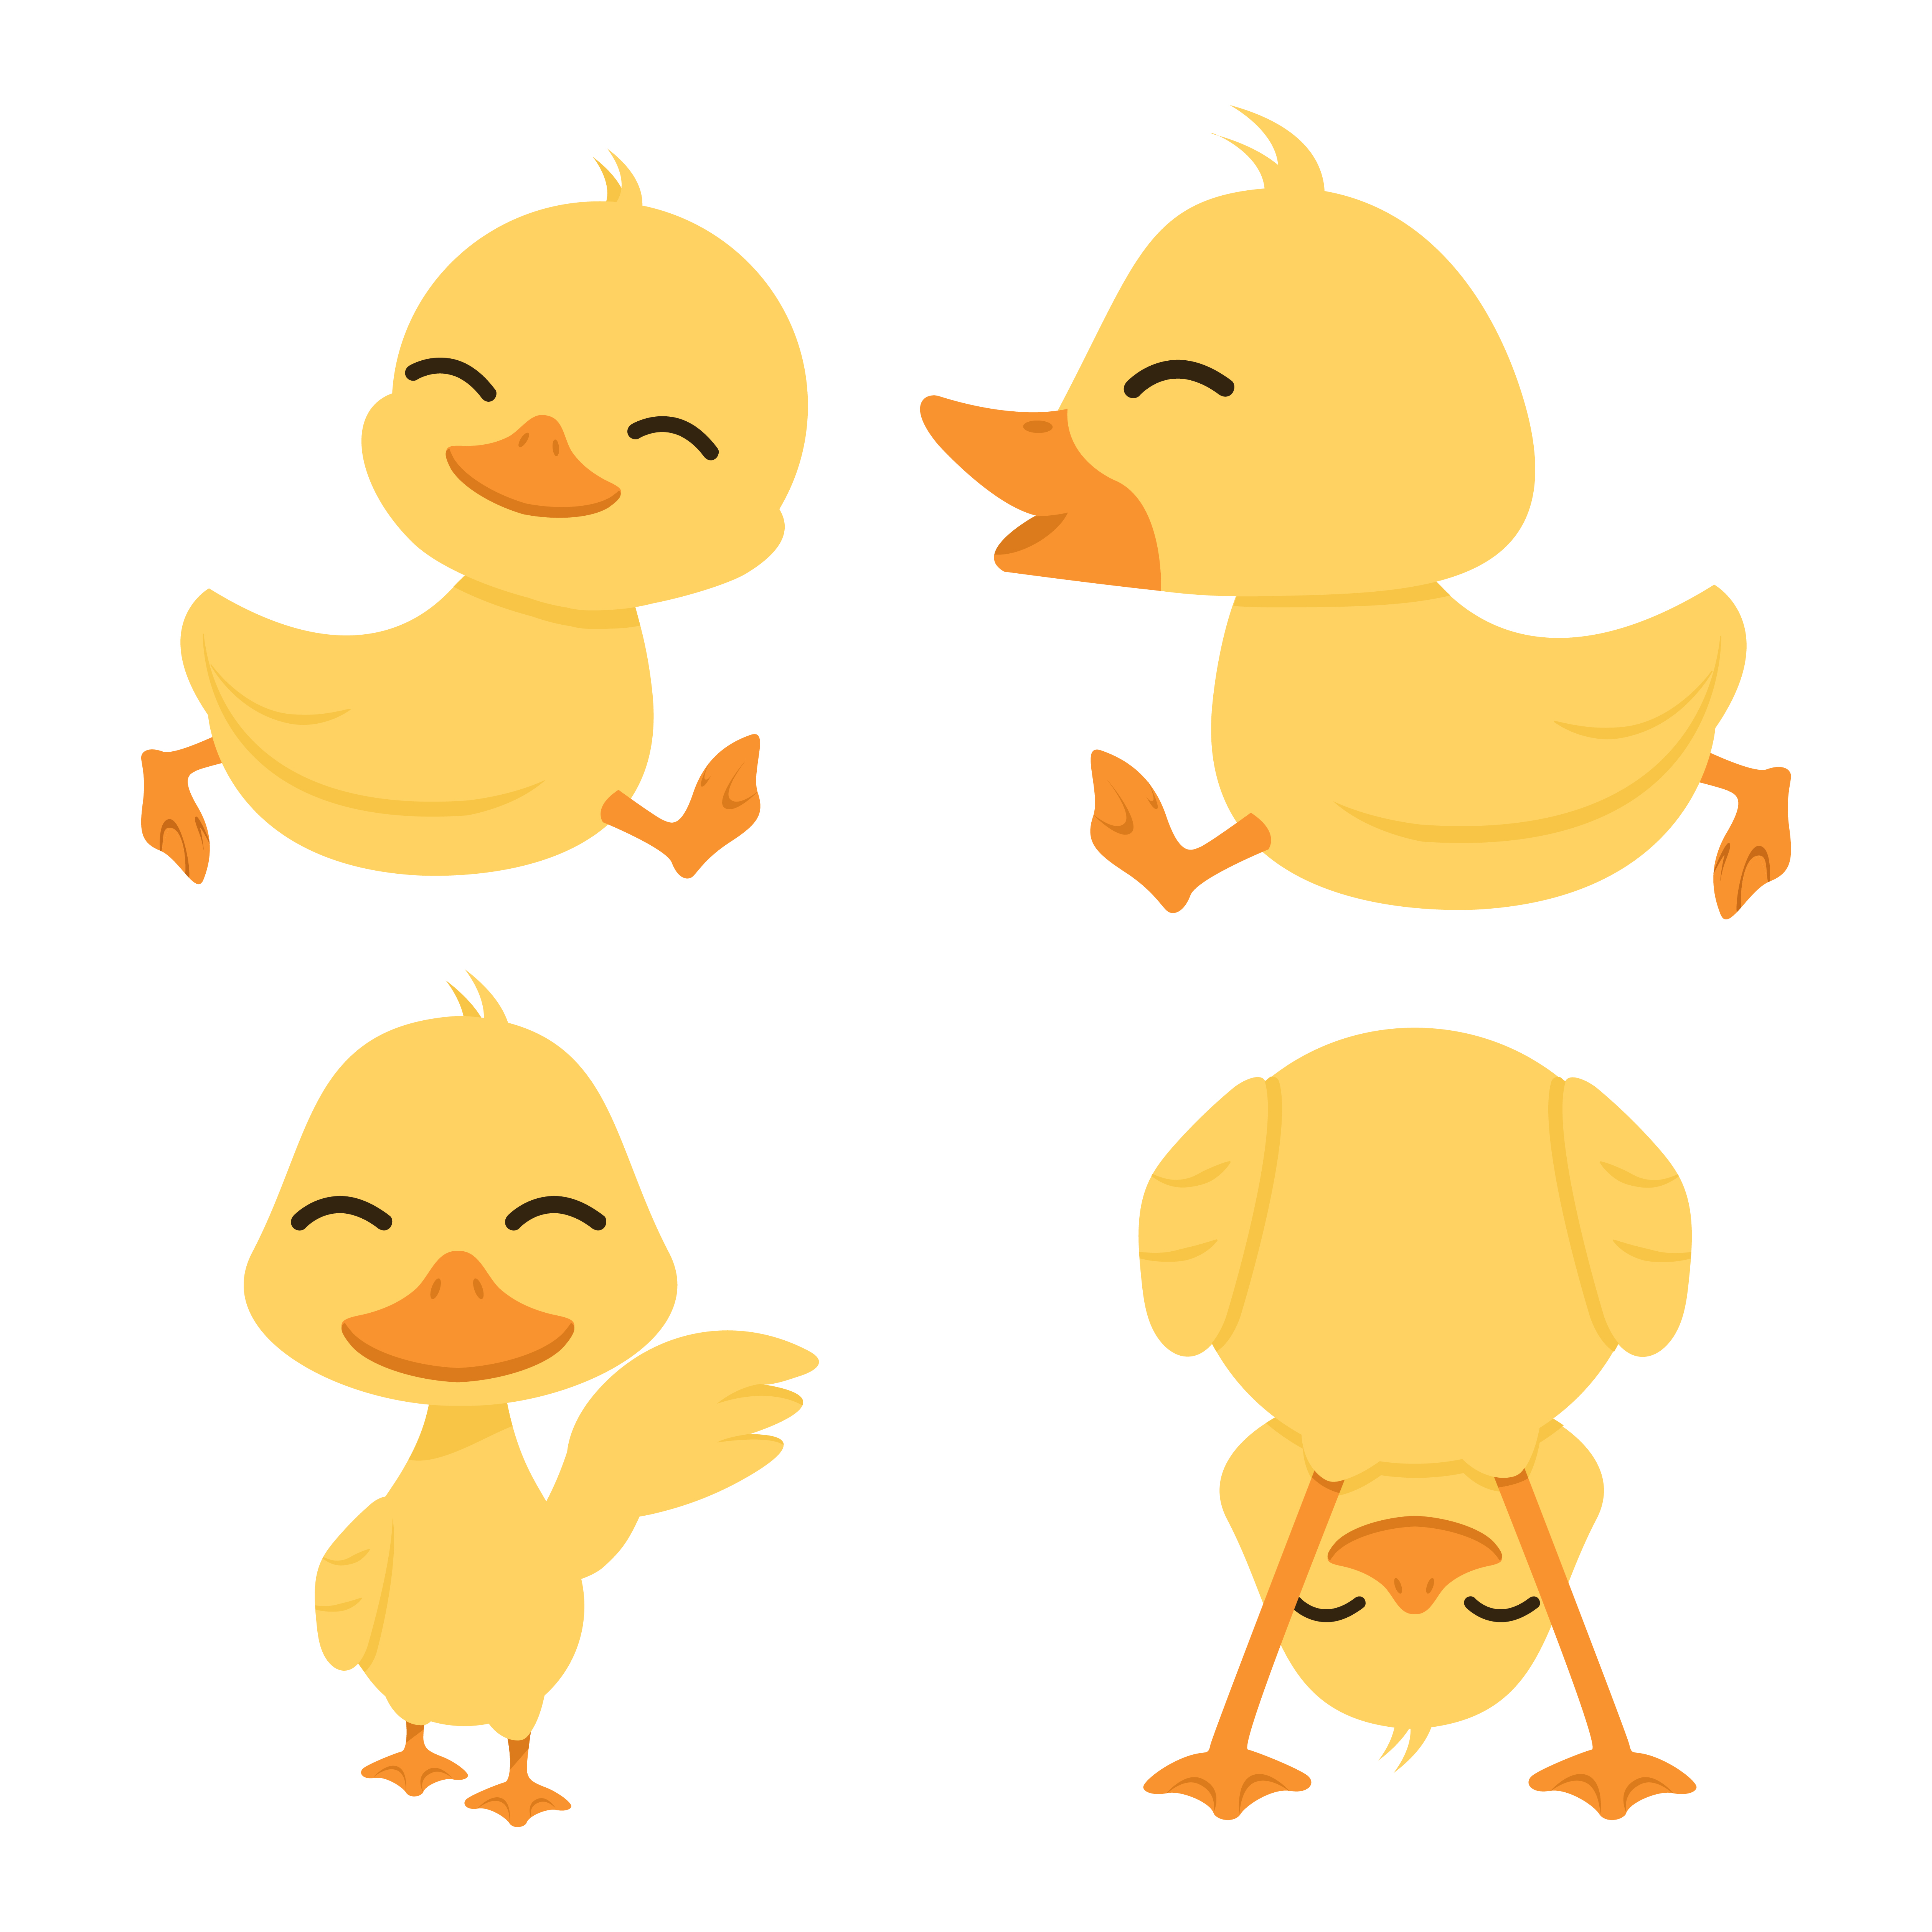 Cute little yellow ducks set 1666140 Vector Art at Vecteezy